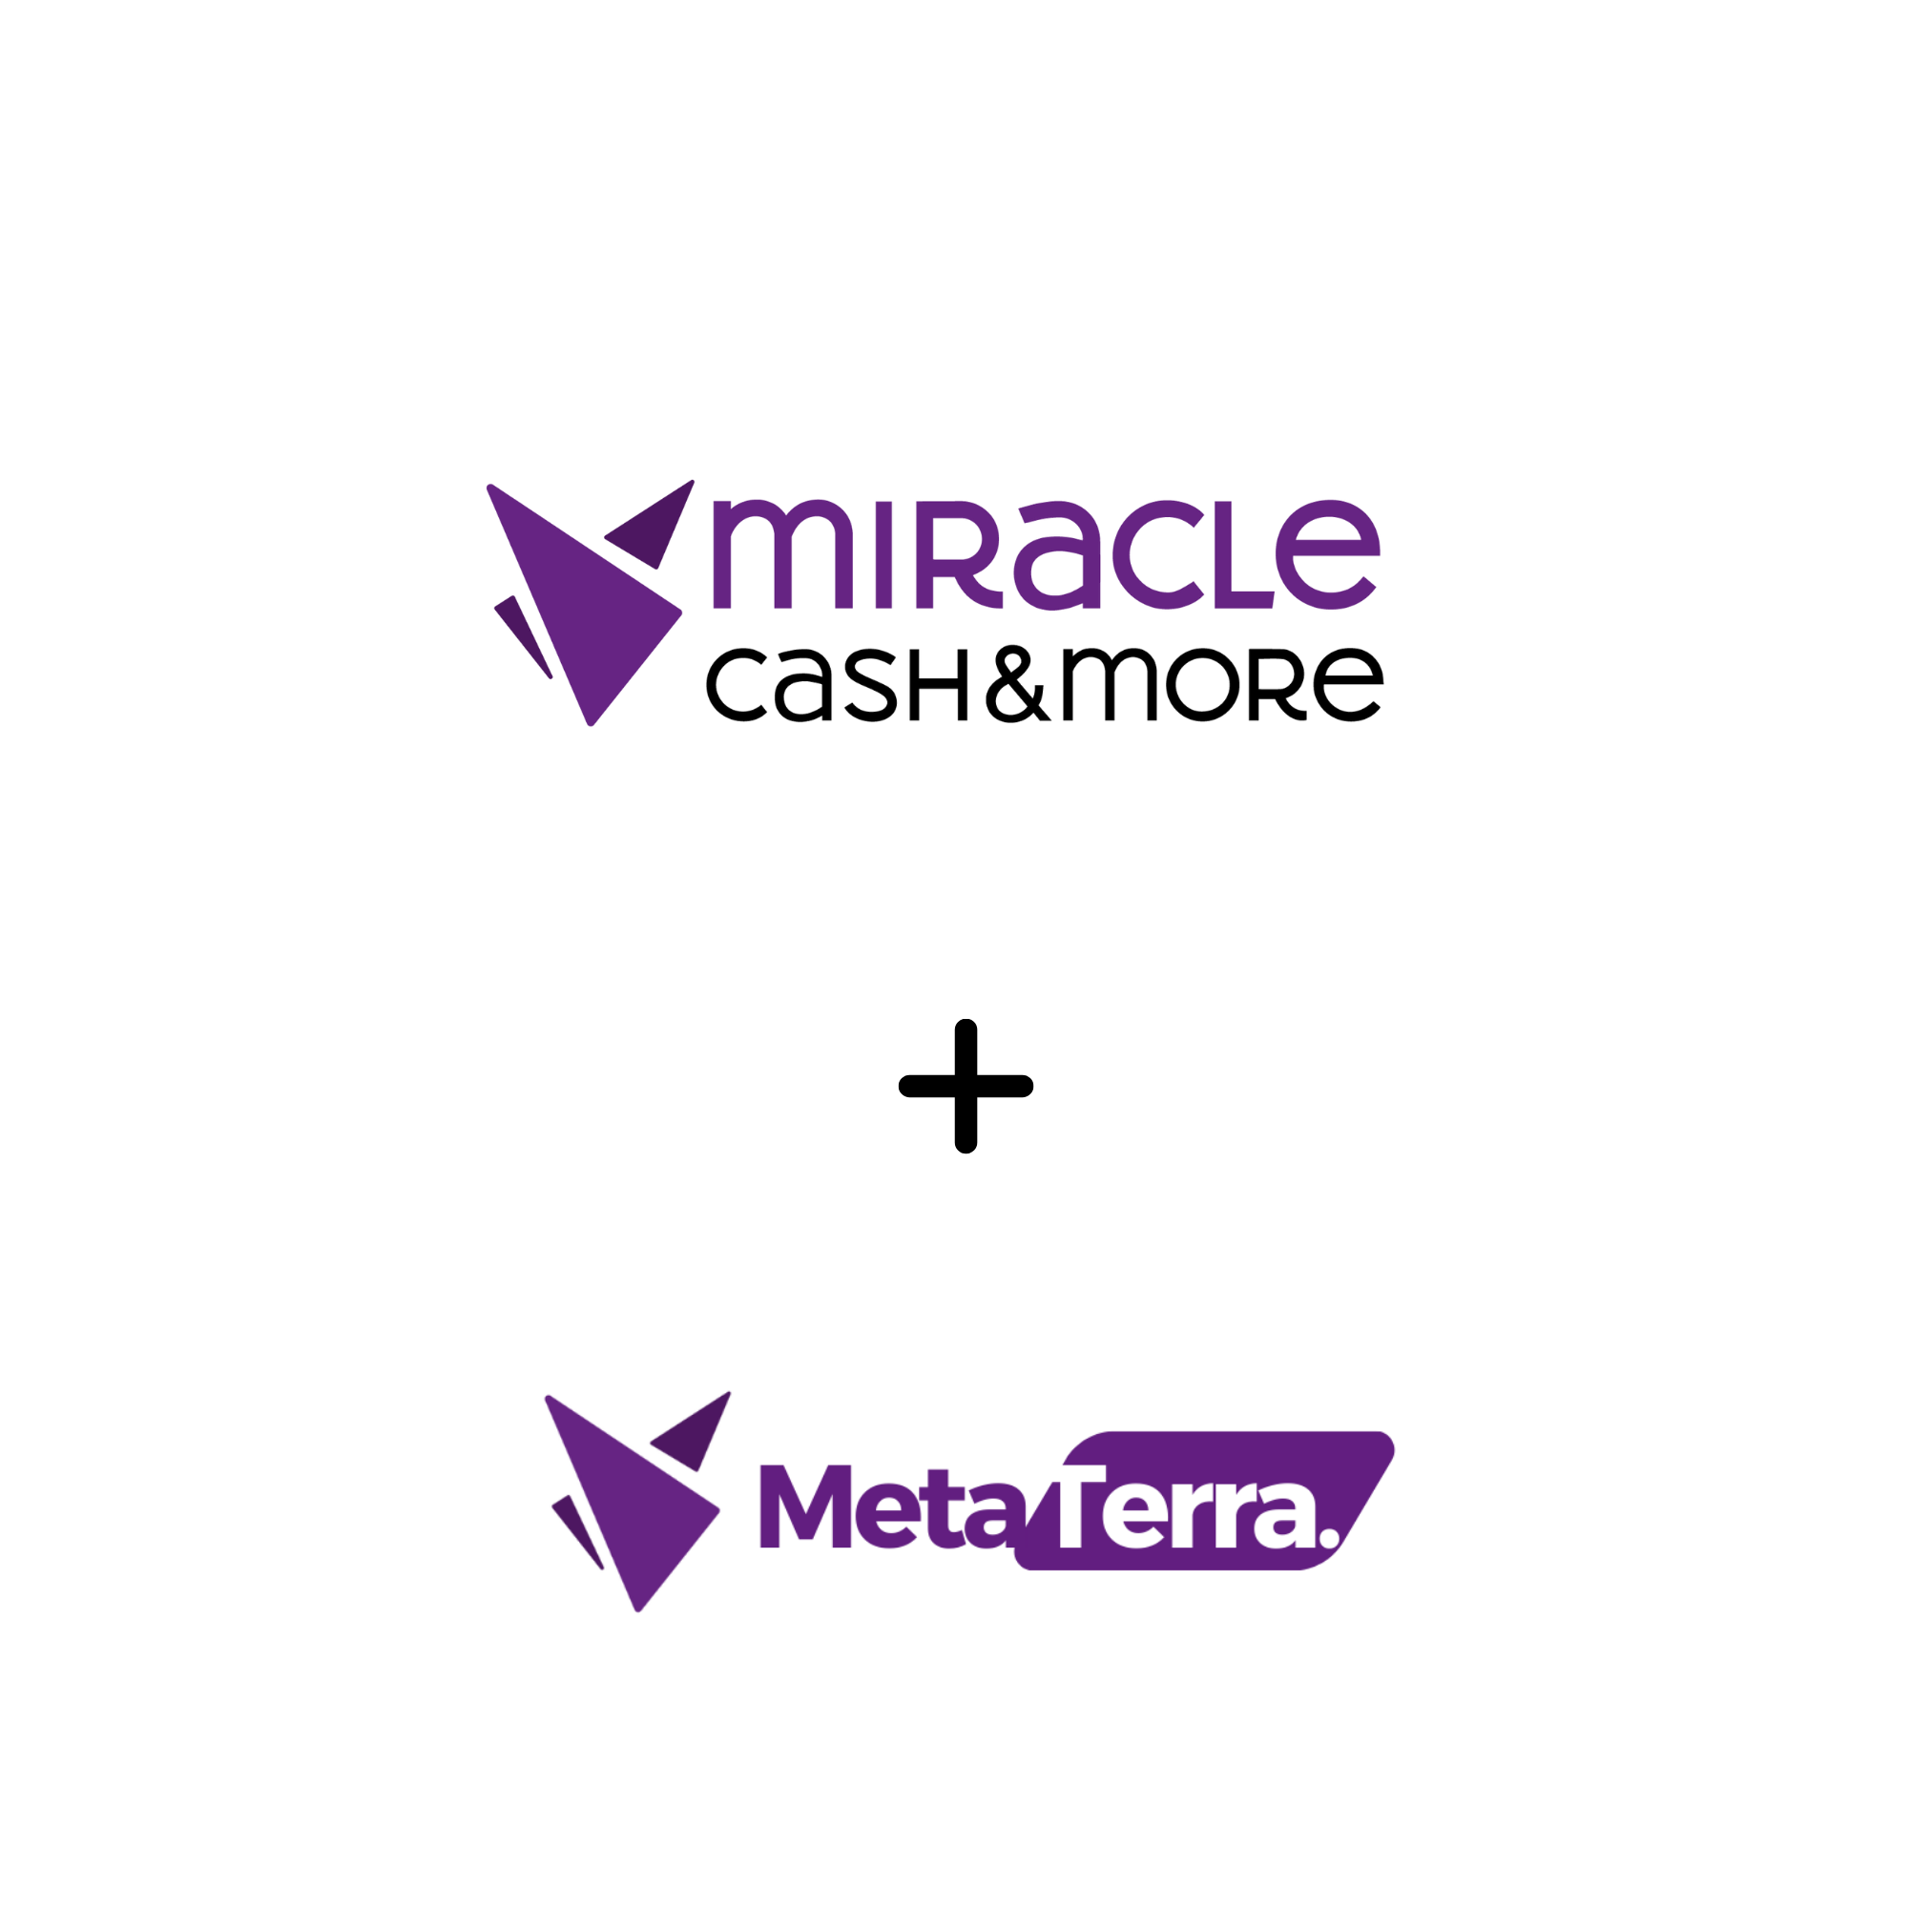 Miracle CashMore Acquires Metaterra